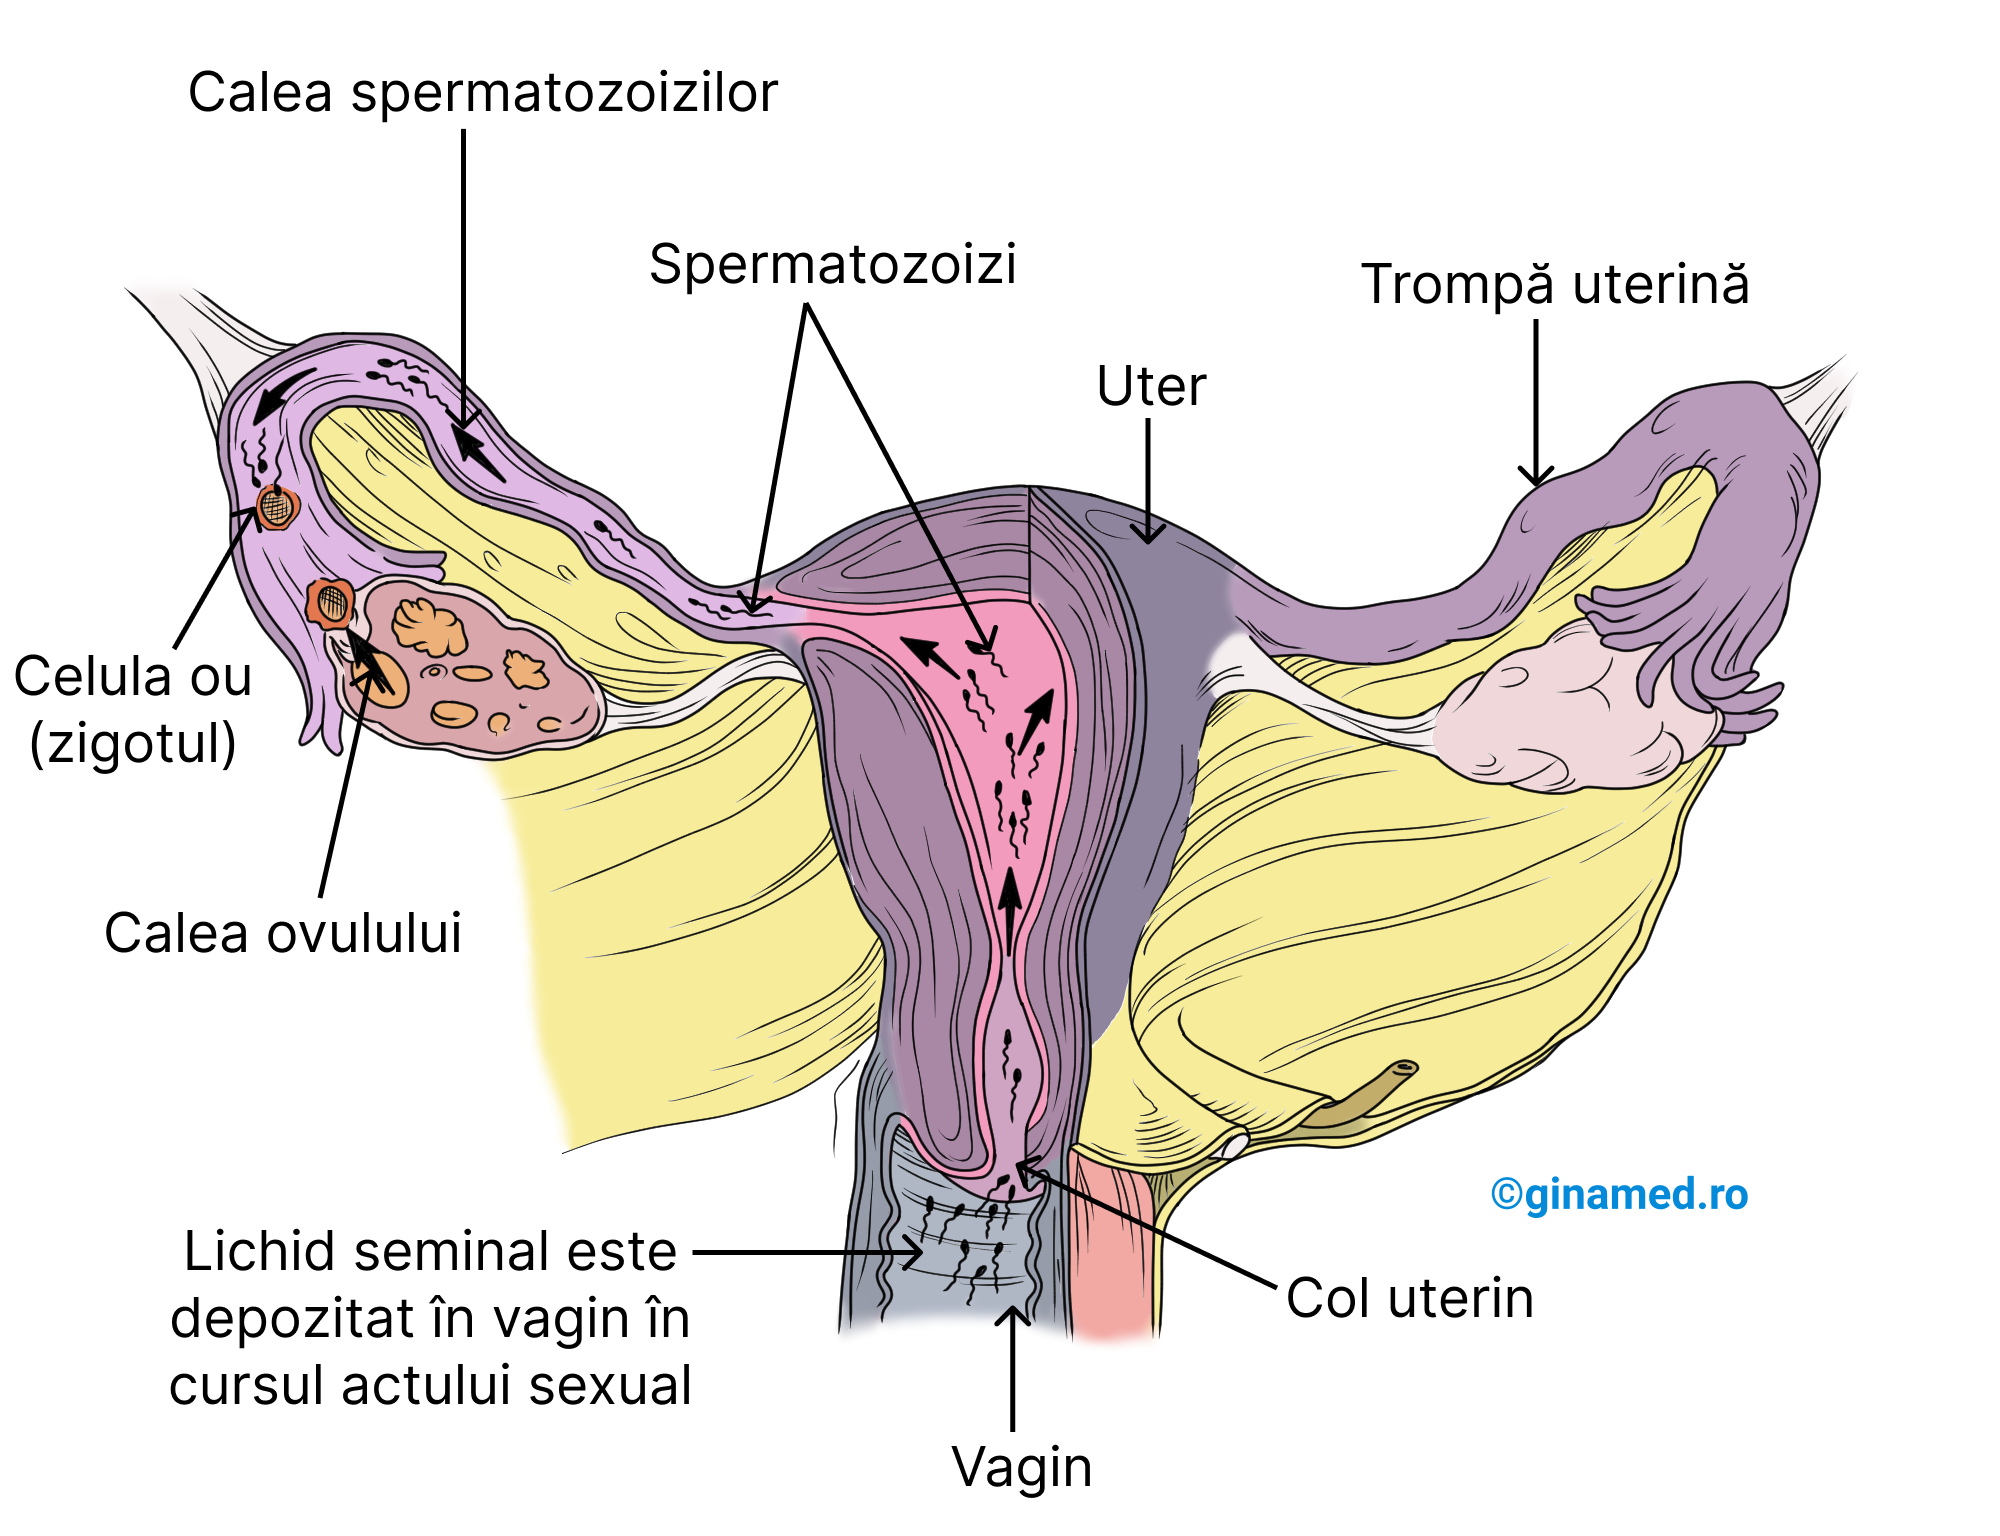 Fecundația la nivelul trompelor uterine.